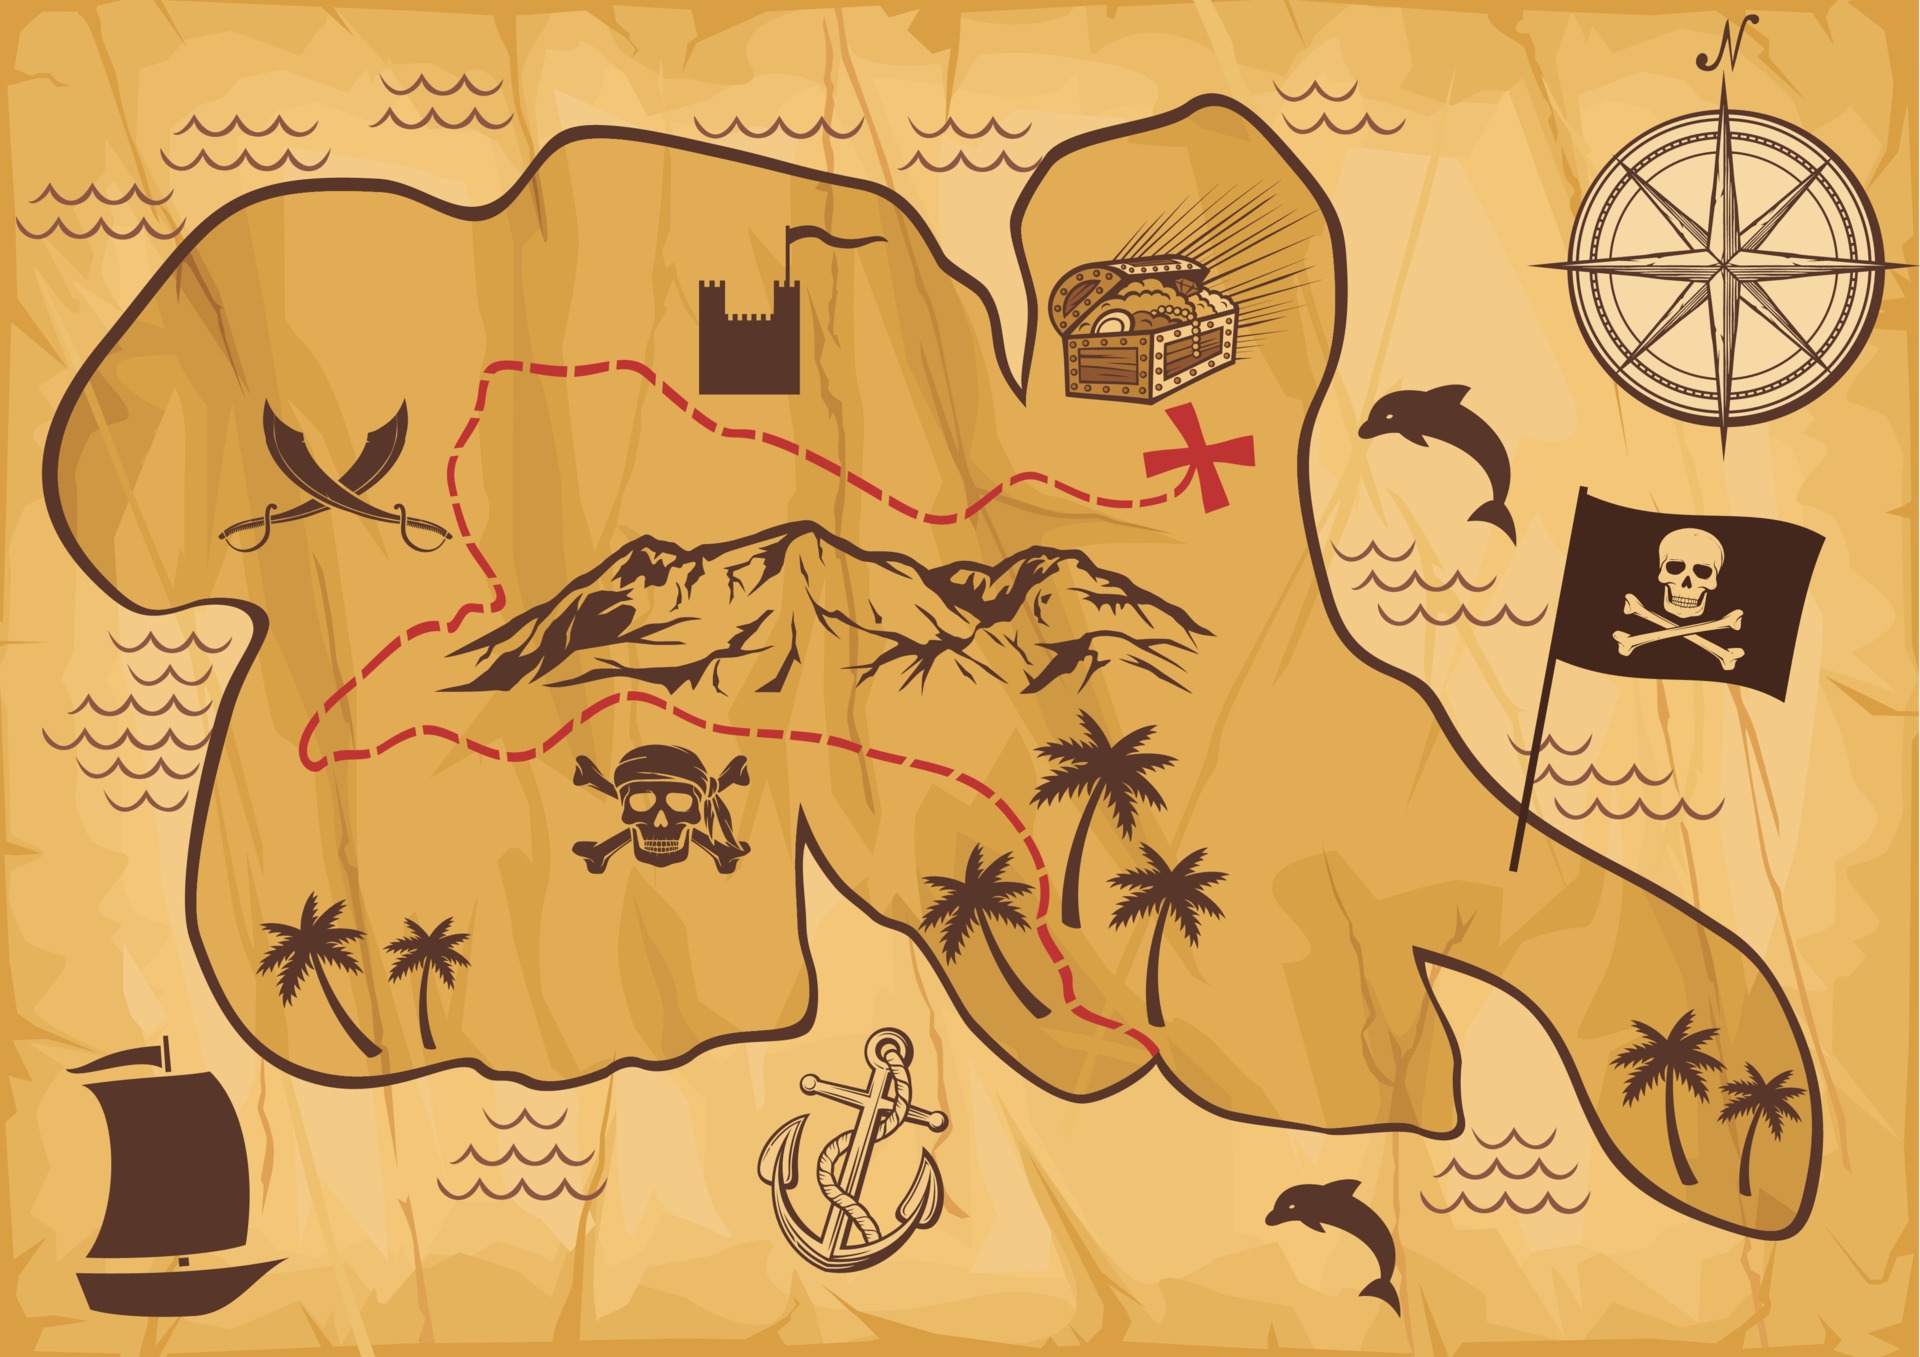 MAPA DO TESOURO  Pirate treasure maps, Pirate maps, Treasure maps